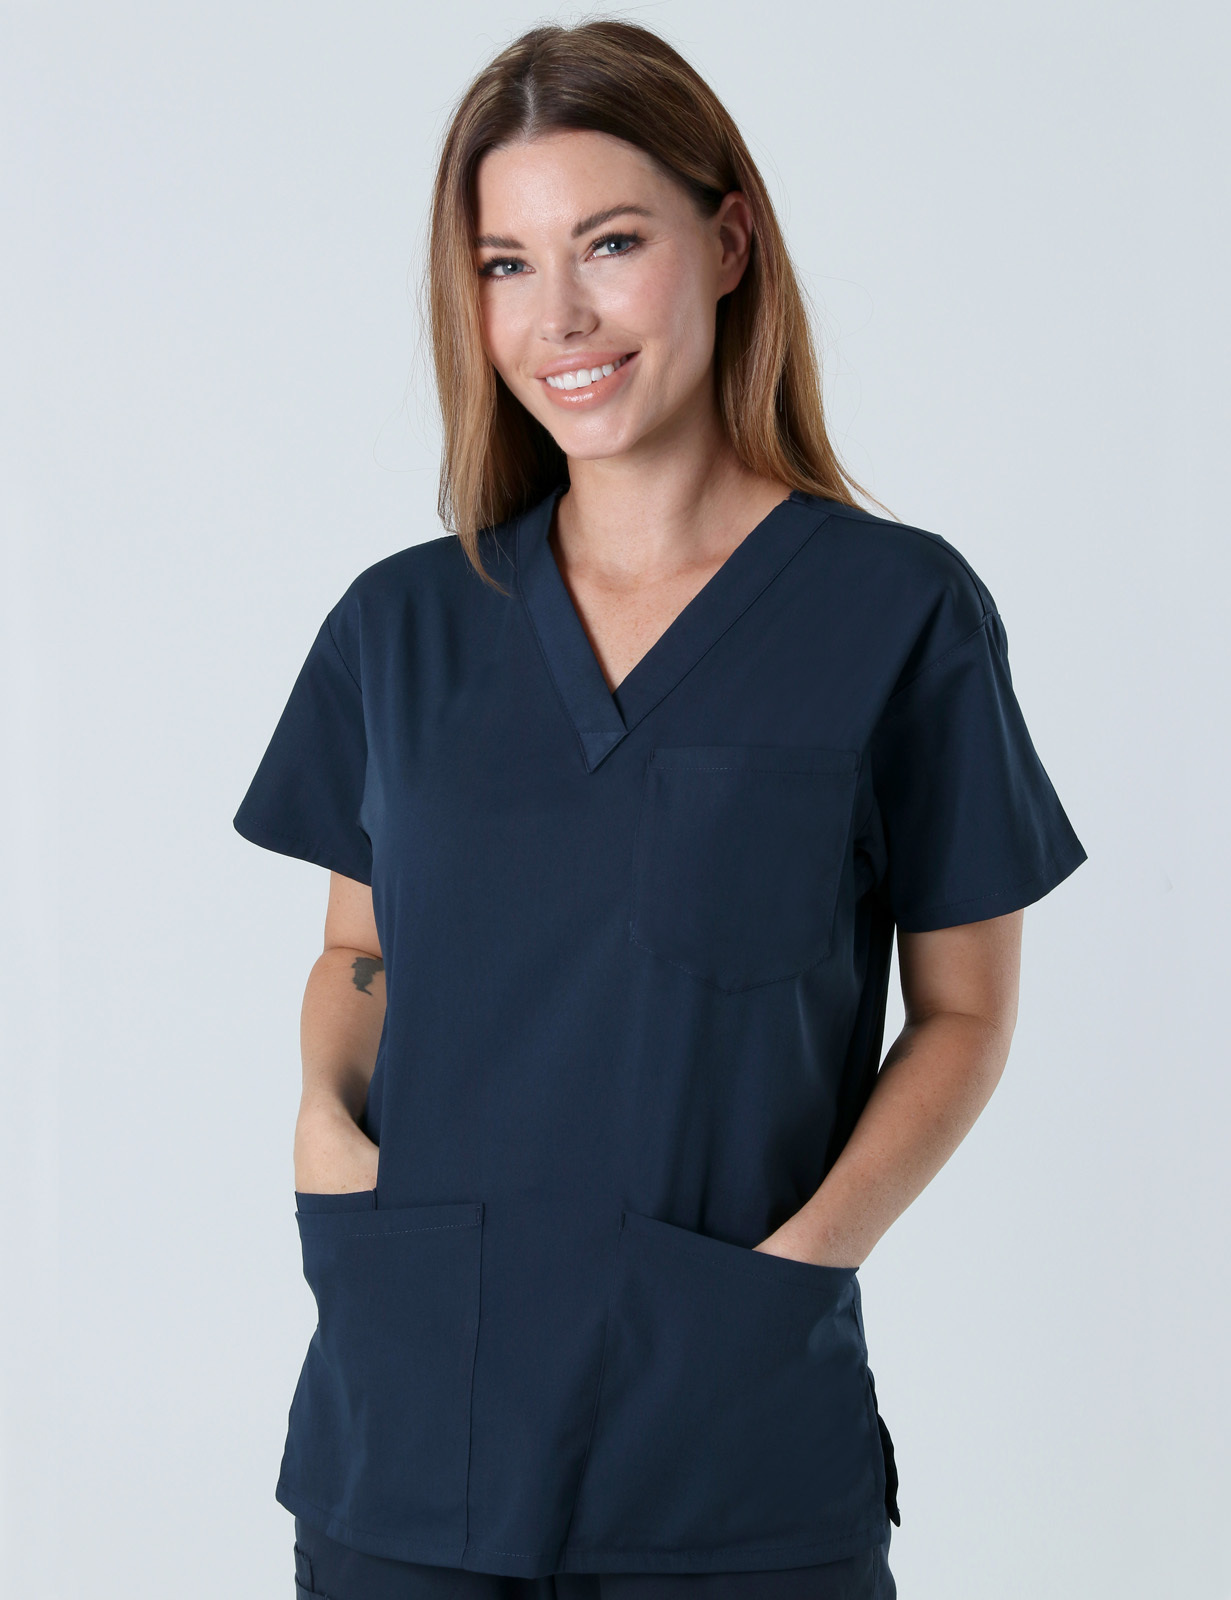 Peninsula Health Frankston - 4GN Nurse (4 Pocket Scrub Top and Cargo Pants in Navy incl Logos)